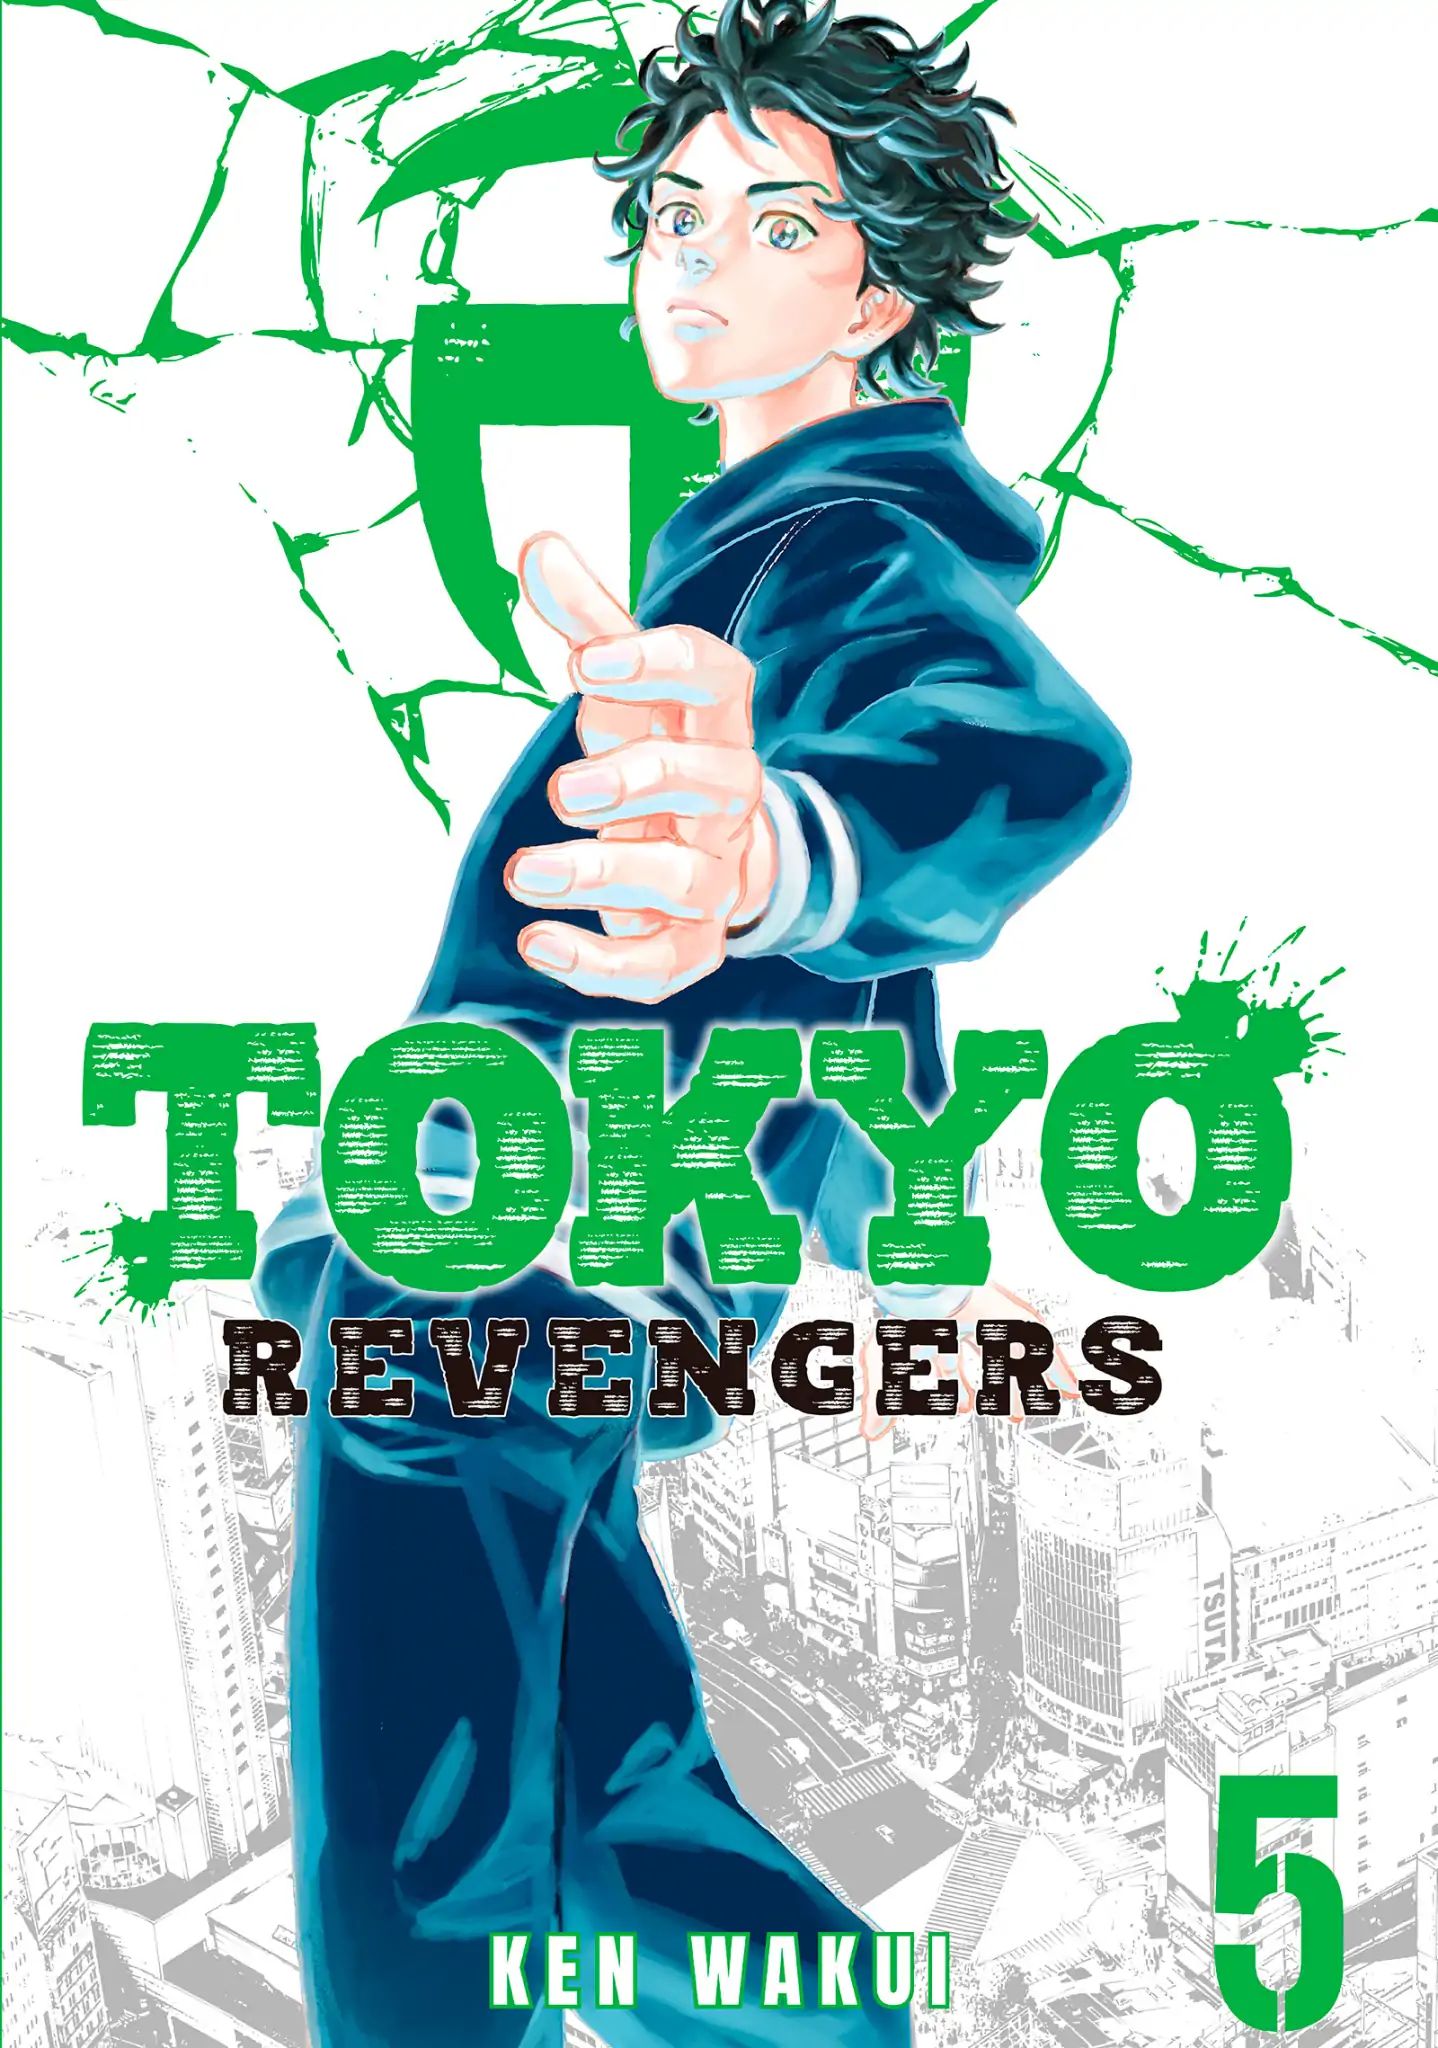 Tokyo Manji Revengers Vol.5 Chapter 34: Darkest Hour